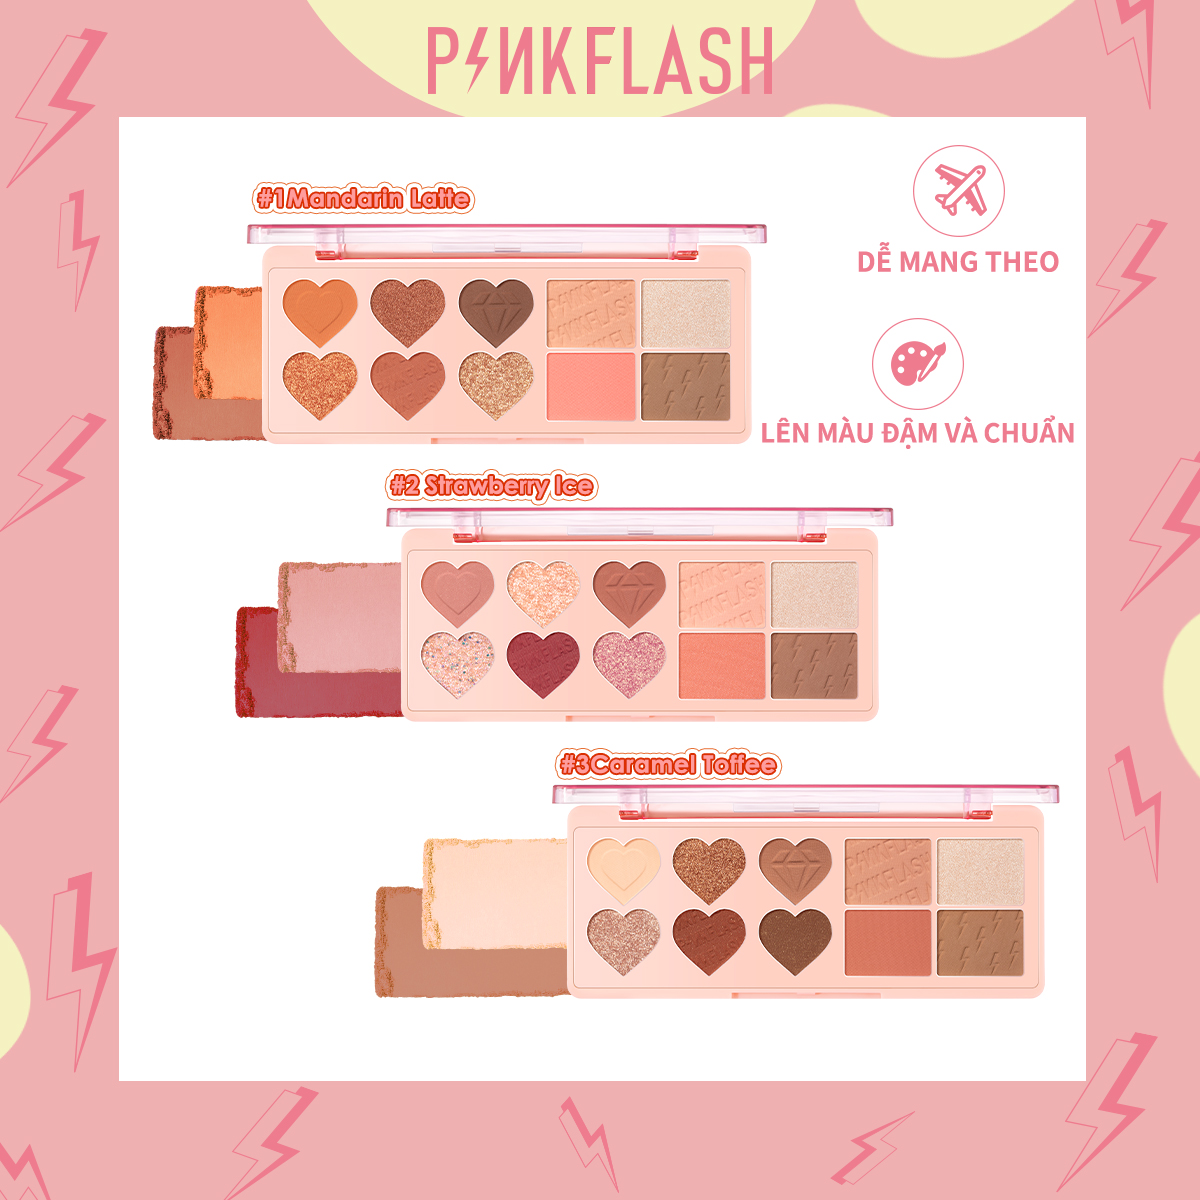 PINKFLASH #OhMyLove Multiple Face Palette Phấn mắt & Phấn má hồng & Highlighter & Contour 4 trong 1 + tiện lợi / sắc tố cao / mềm và mịn + Bảng mặt "không màu"